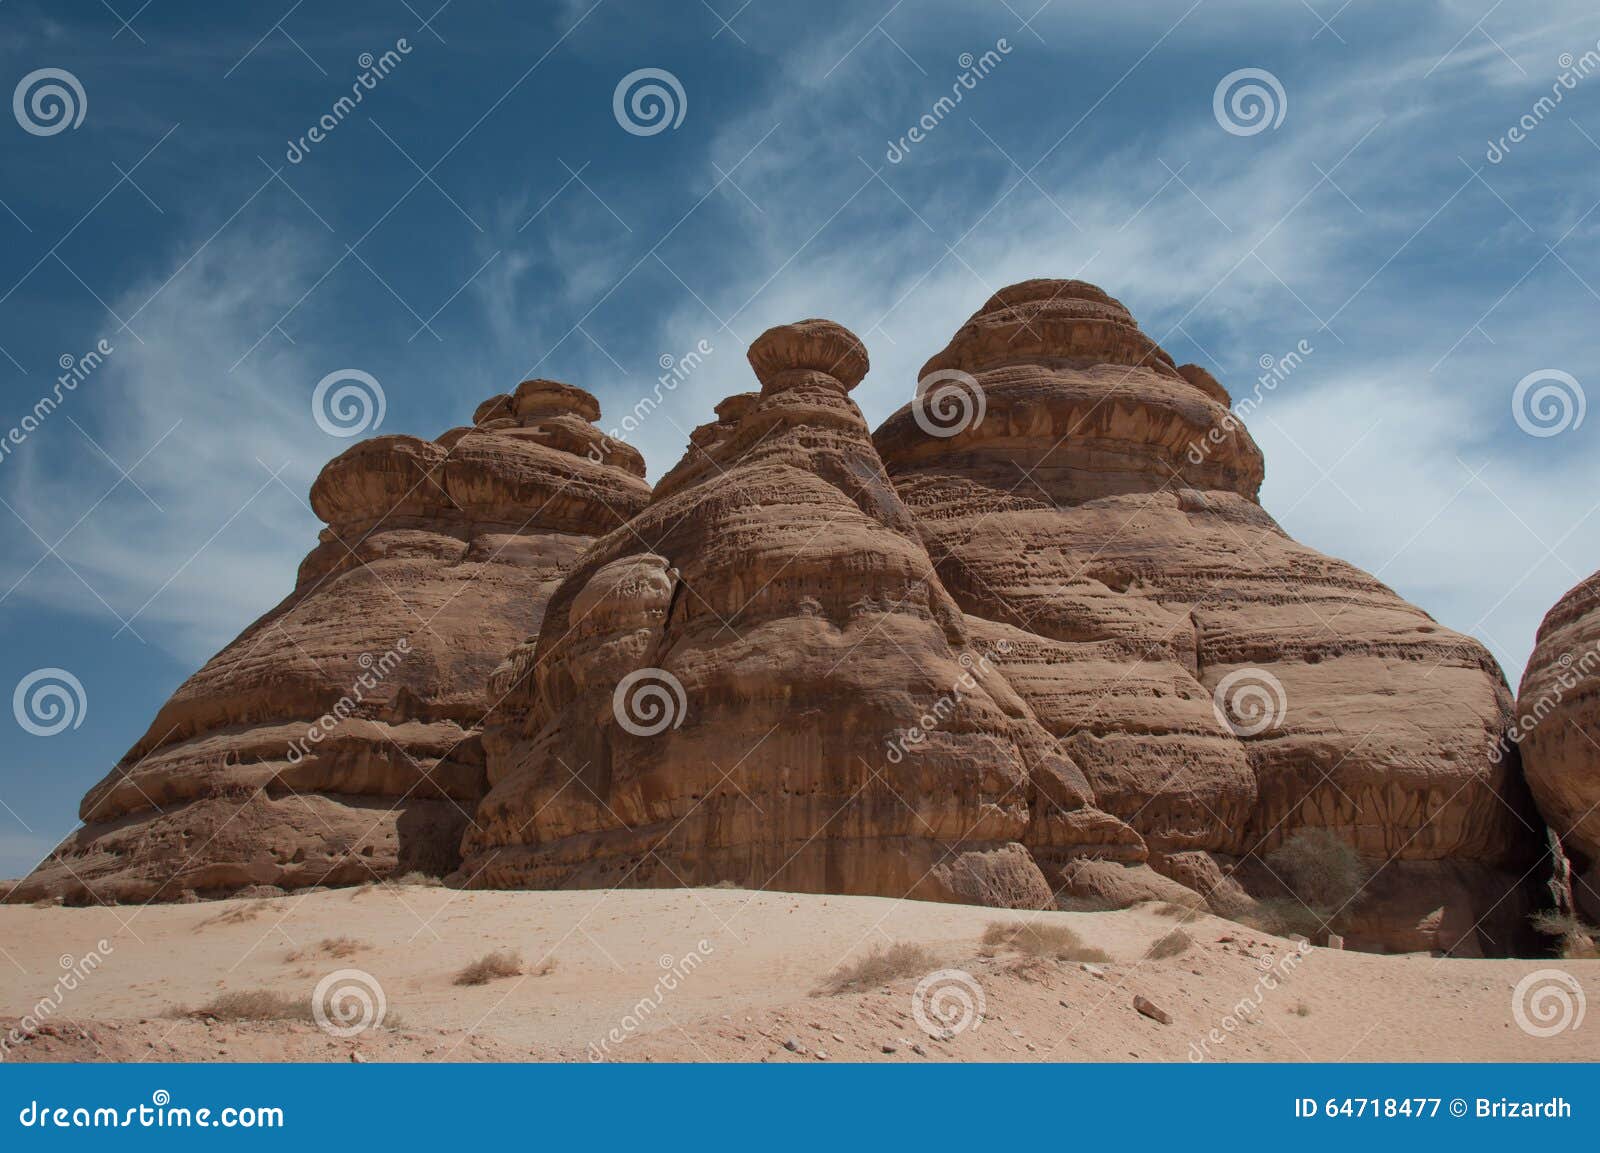 rock formations in madain saleh, saudi arabia